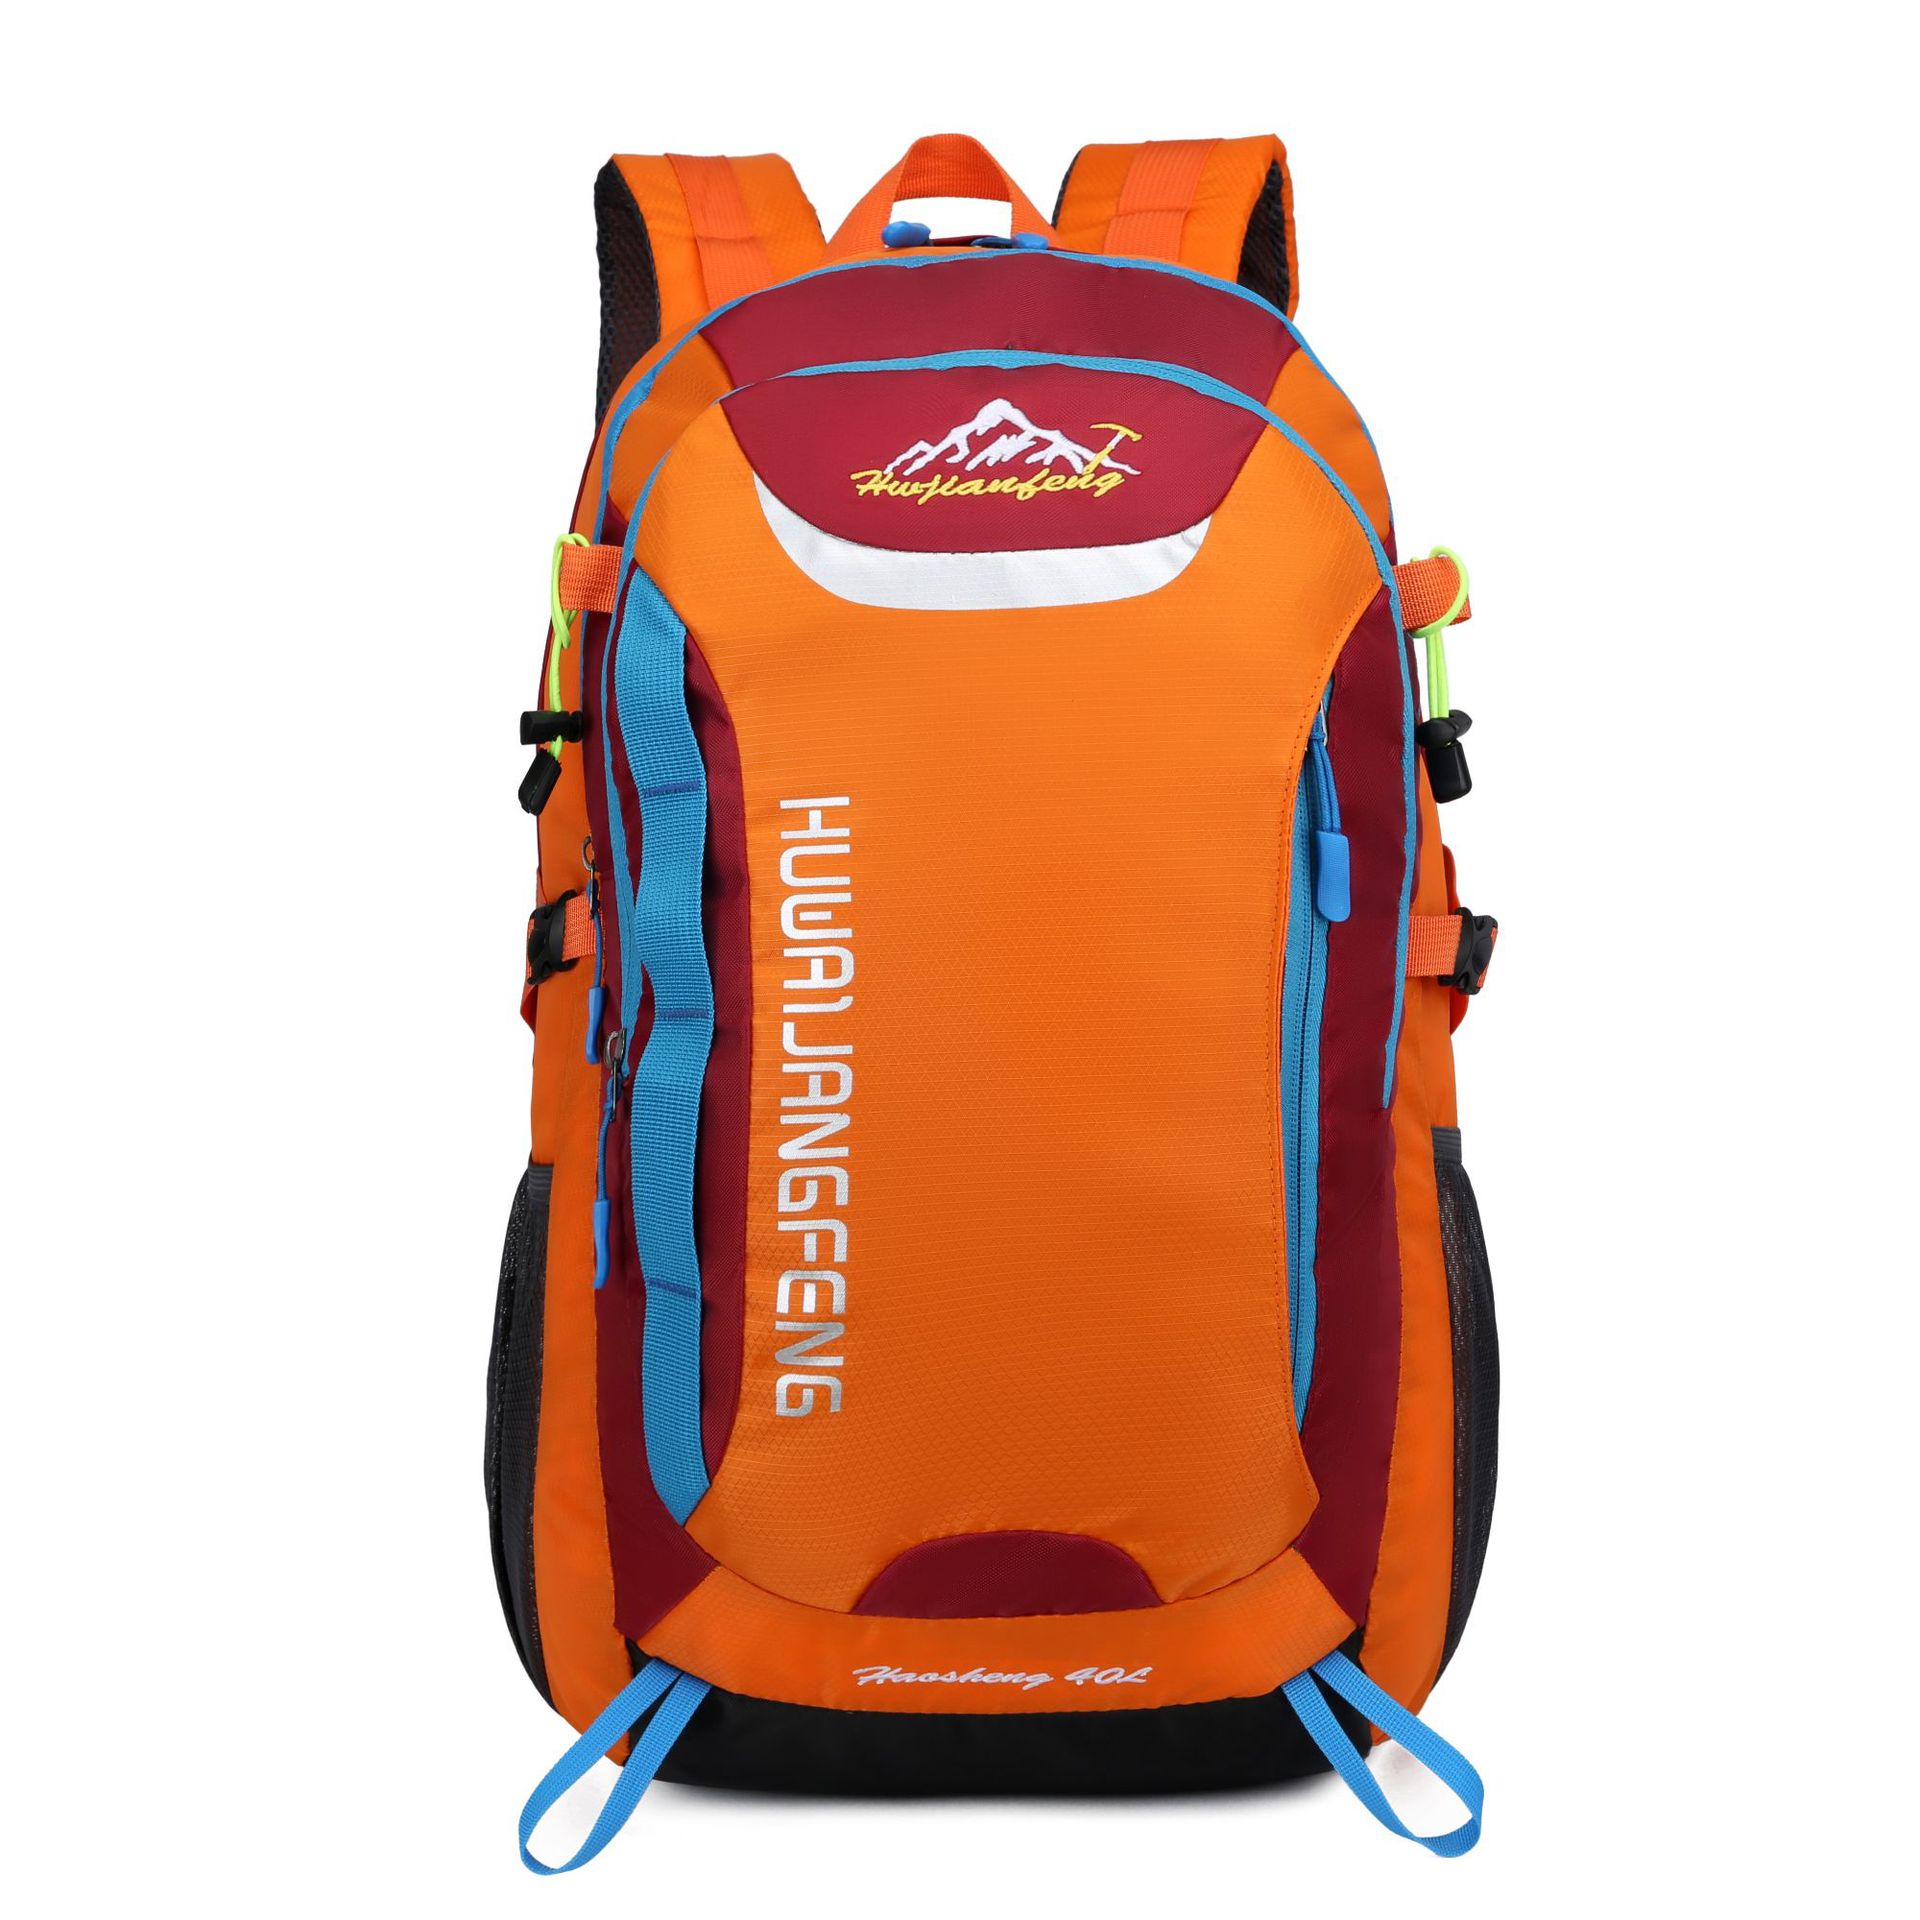 Udendørs tasker sport rejser bjergbestigning rygsæk camping vandreture trekking rygsæk rejser vandtæt cykeltasker 40l skoletasker: Orange